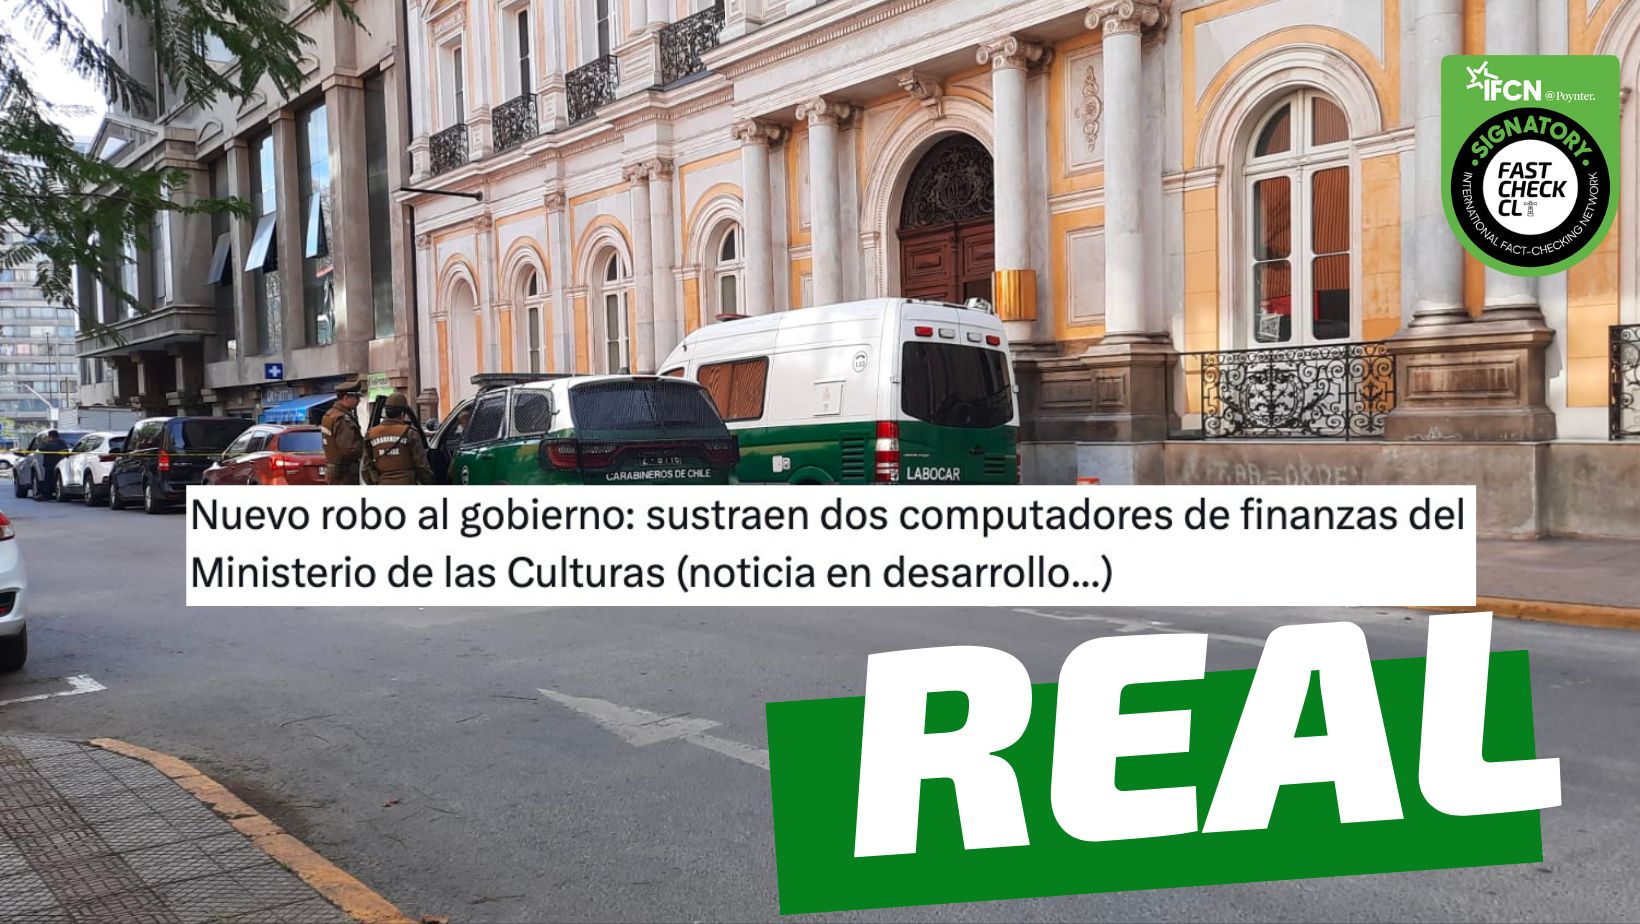 You are currently viewing “Nuevo robo al gobierno: sustraen dos computadores de finanzas del Ministerio de las Culturas”: #Real